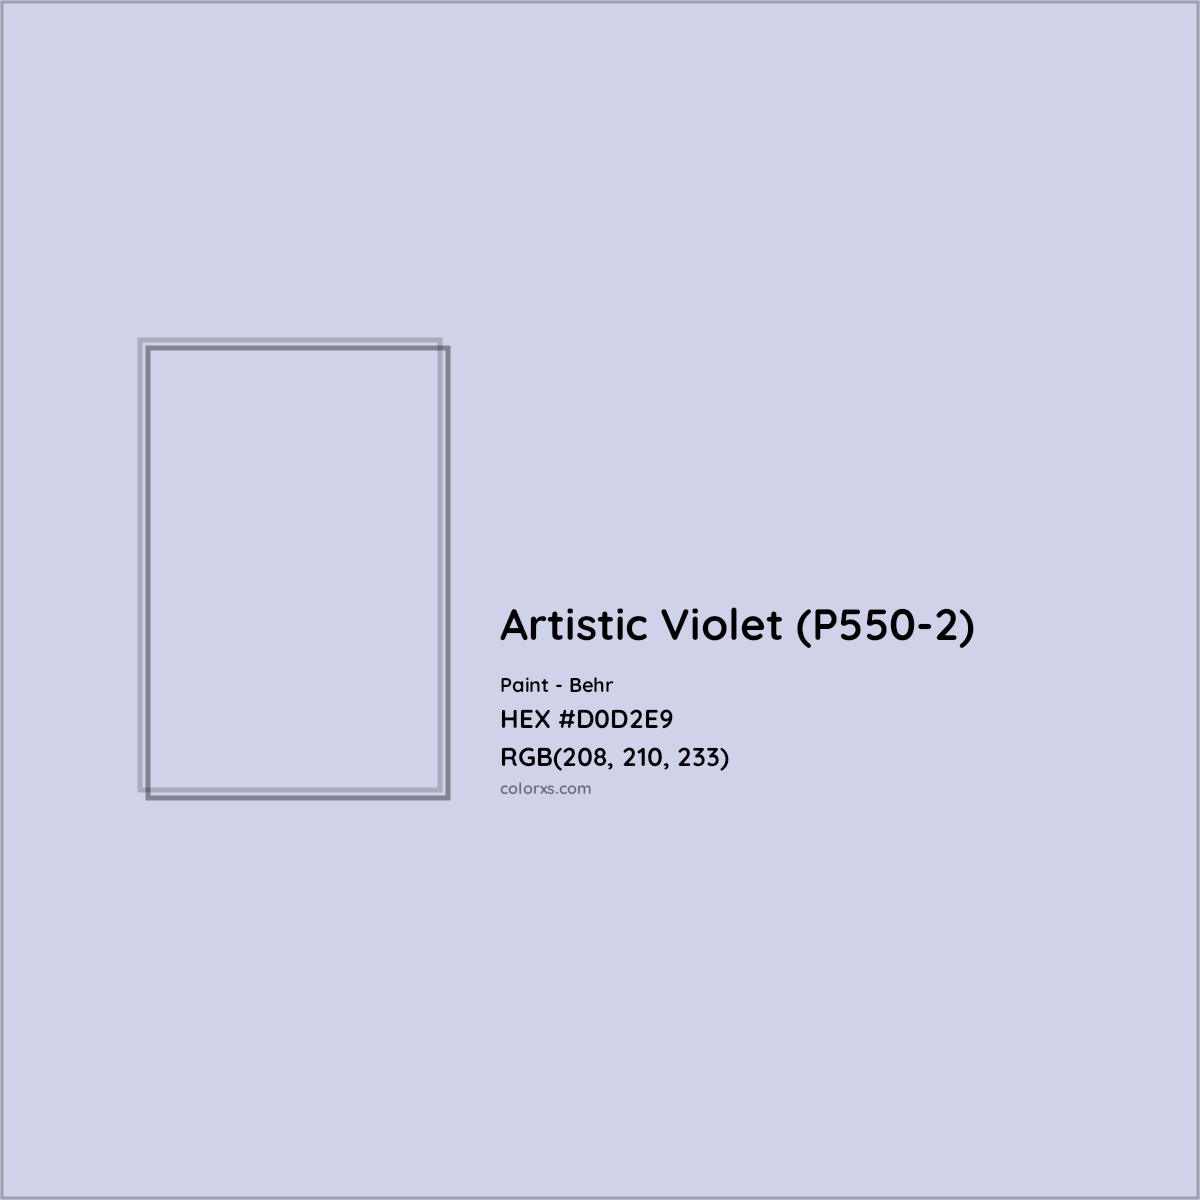 HEX #D0D2E9 Artistic Violet (P550-2) Paint Behr - Color Code